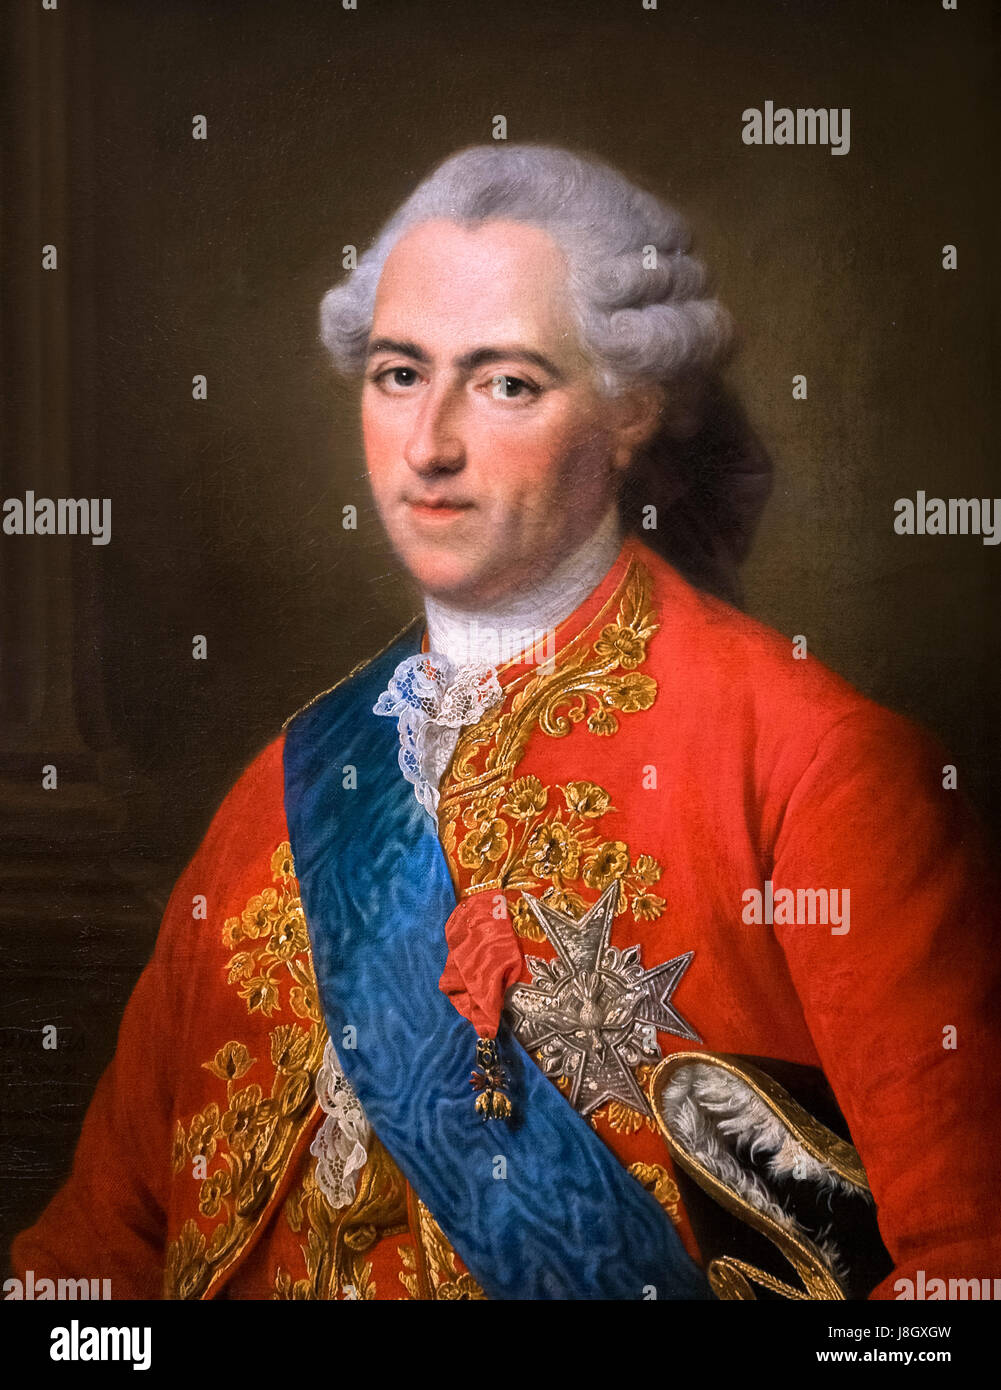 Portrait du roi Louis XV de France (1710-1774) par Francois-Hubert Drouais, huile sur toile, 1773 Banque D'Images